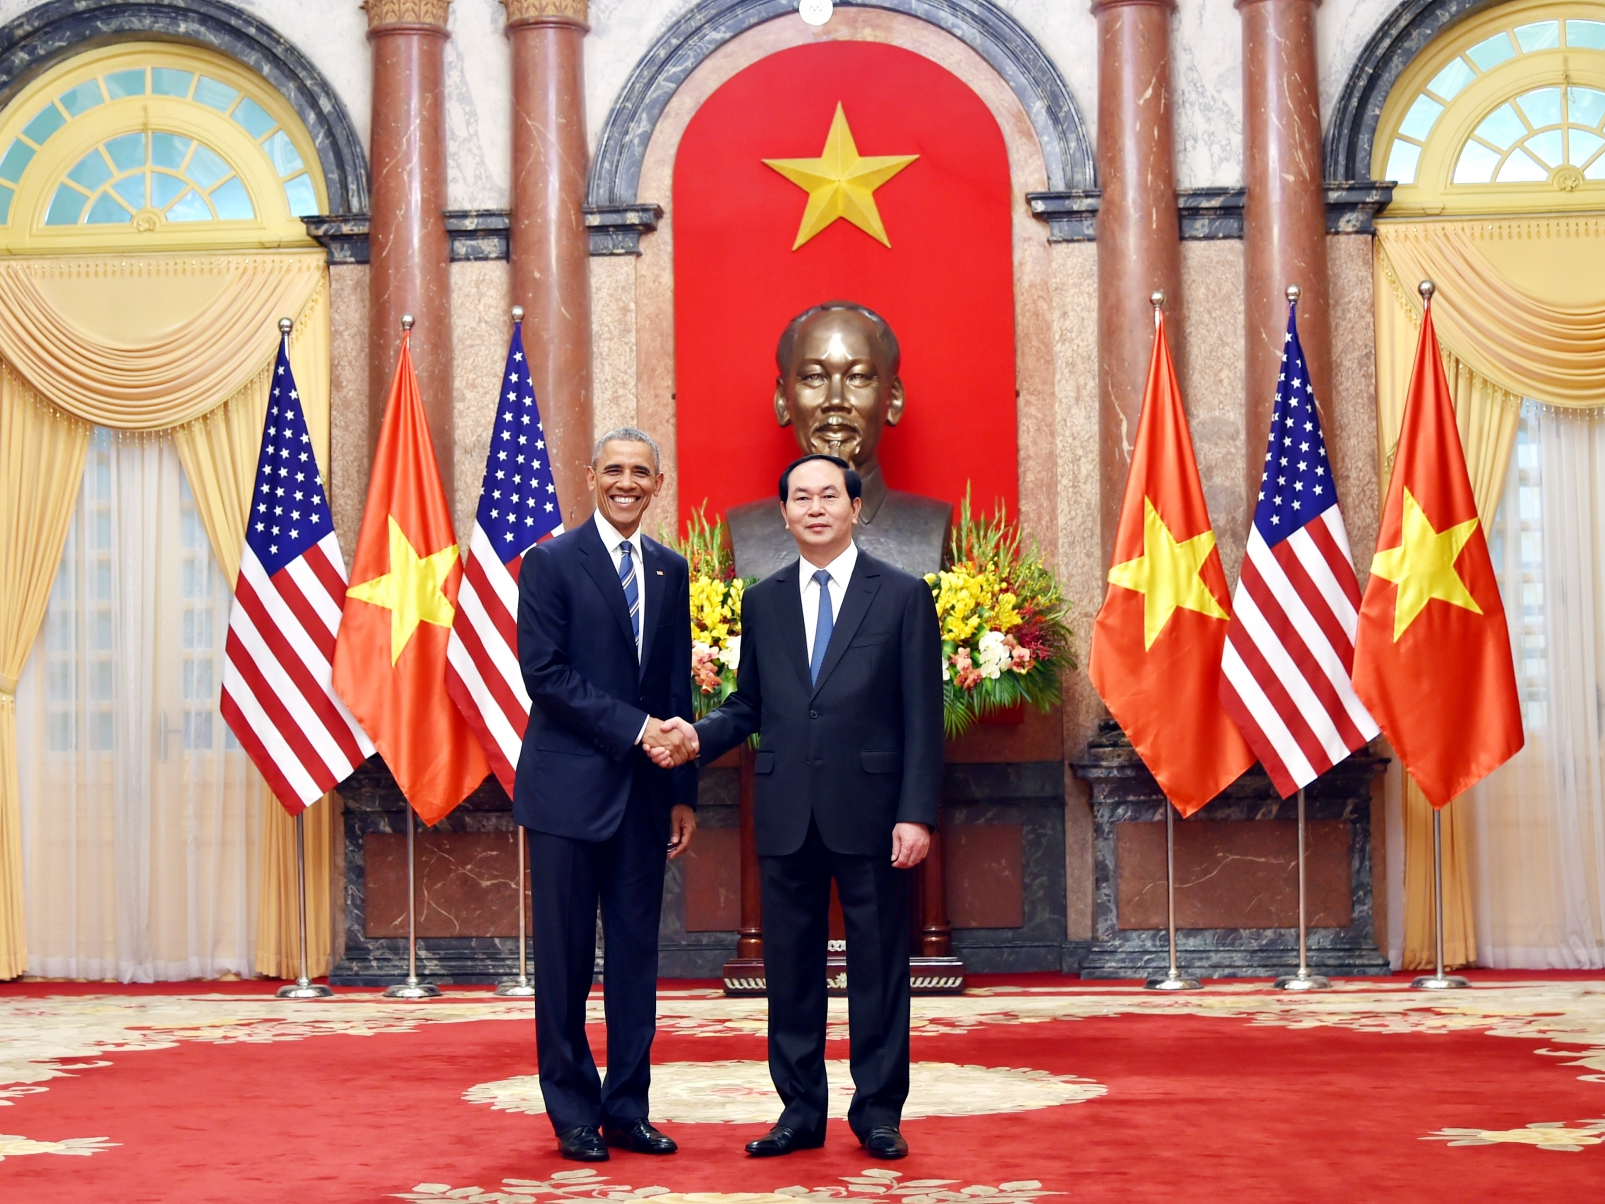 Chủ tịch nước Trần Đại Quang hội đàm với Tổng thống Barack Obama